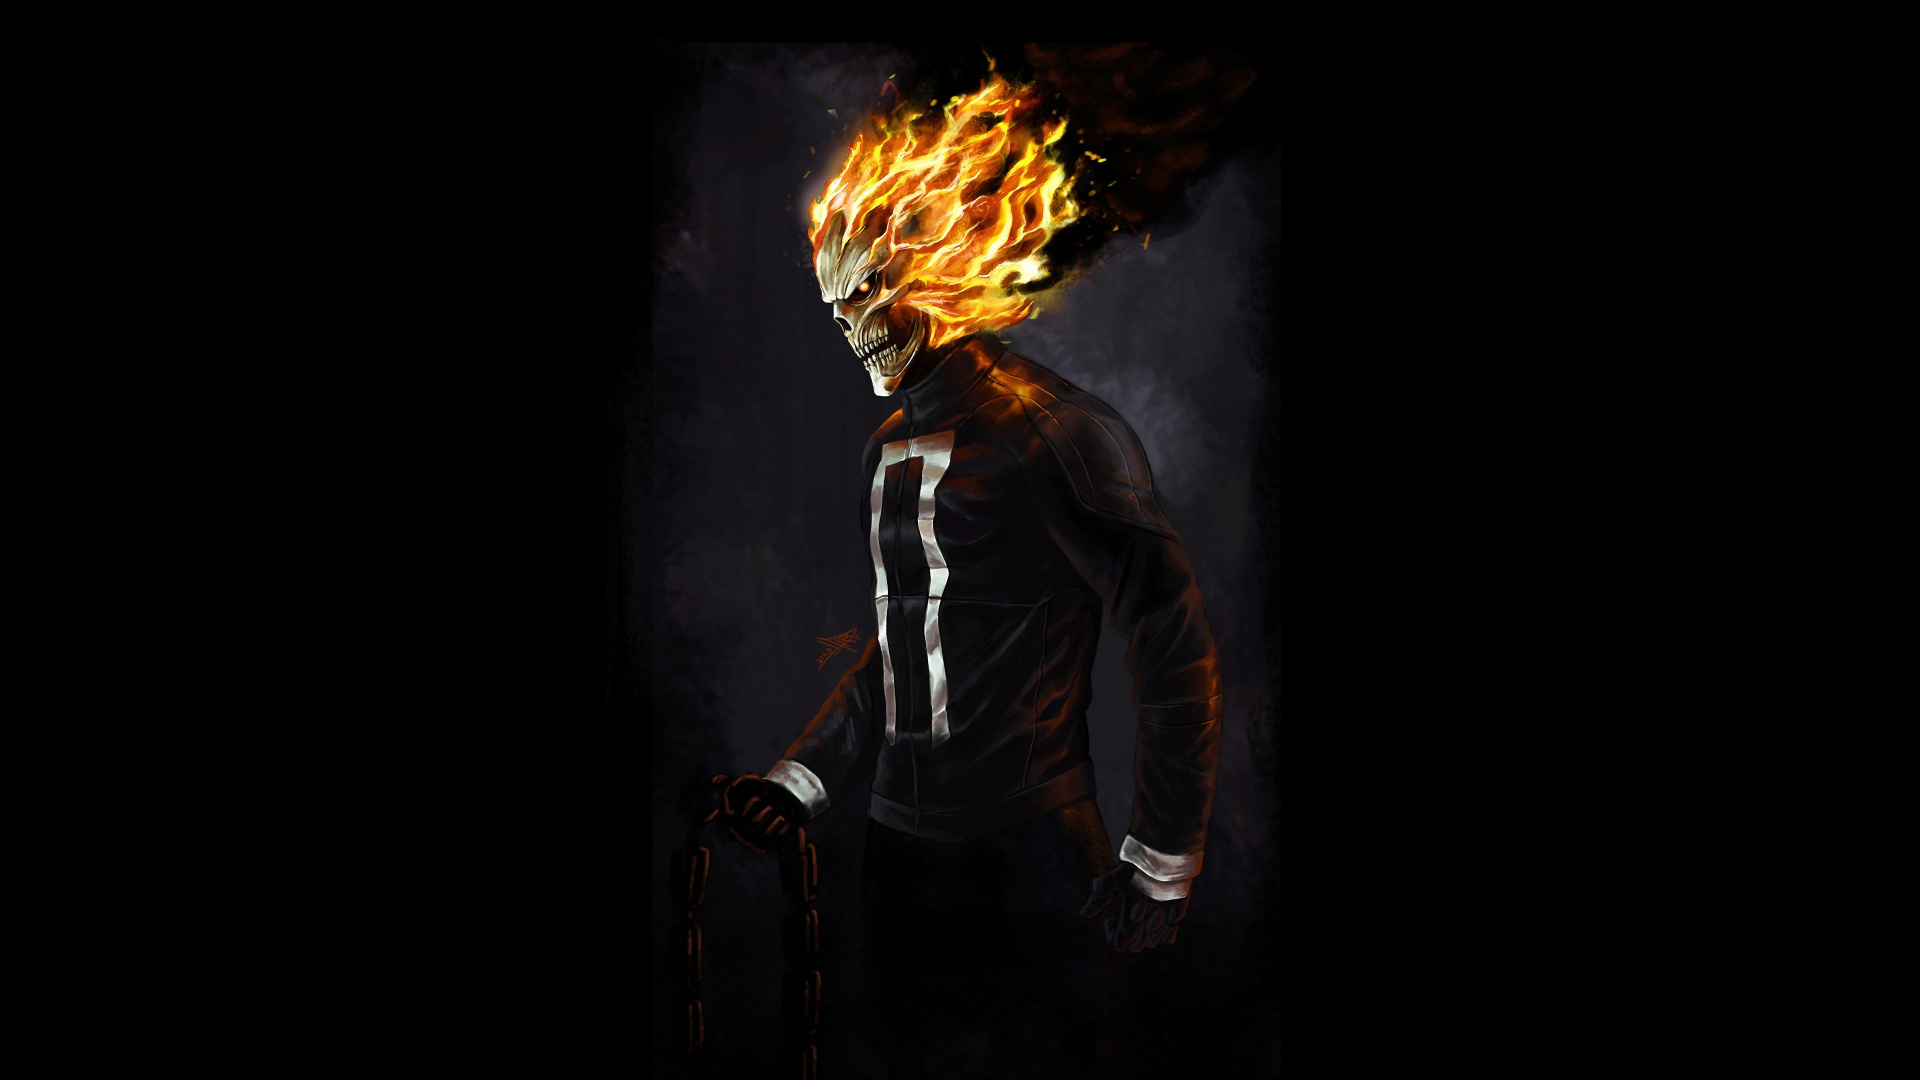 Ghost Rider, Marvel Superhero, Art, Wallpaper - Ghost Rider Wallpaper 4k - HD Wallpaper 